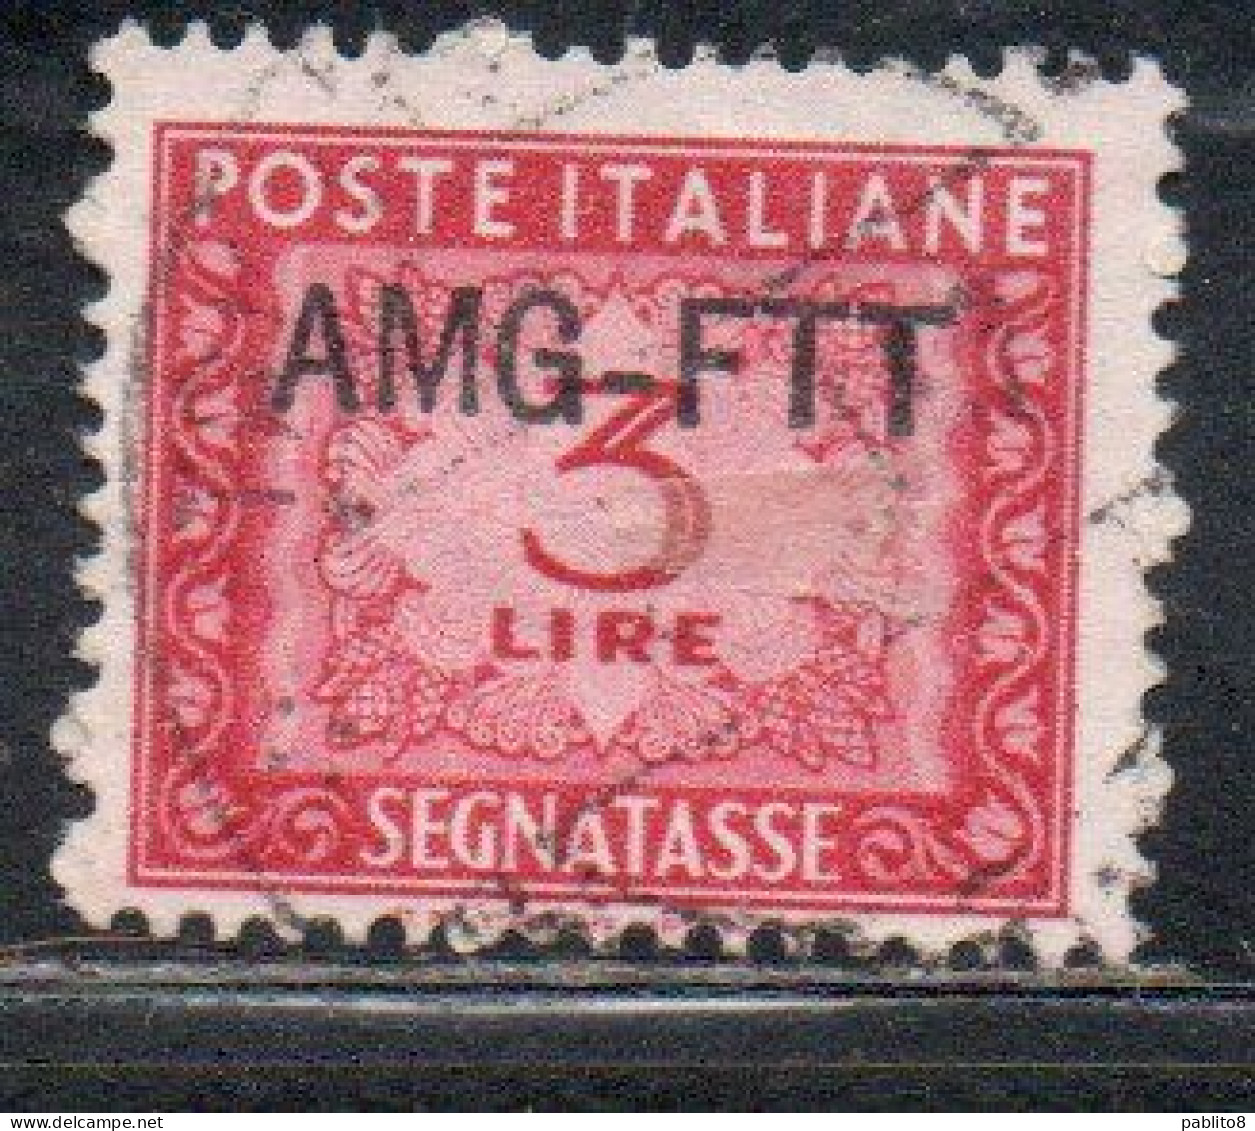 TRIESTE A 1949 1954AMG-FTT SOPRASTAMPATO D'ITALIA ITALY OVERPRINTED SEGNATASSE POSTAGE DUE TAXES TASSE LIRE 3 USATO USED - Segnatasse